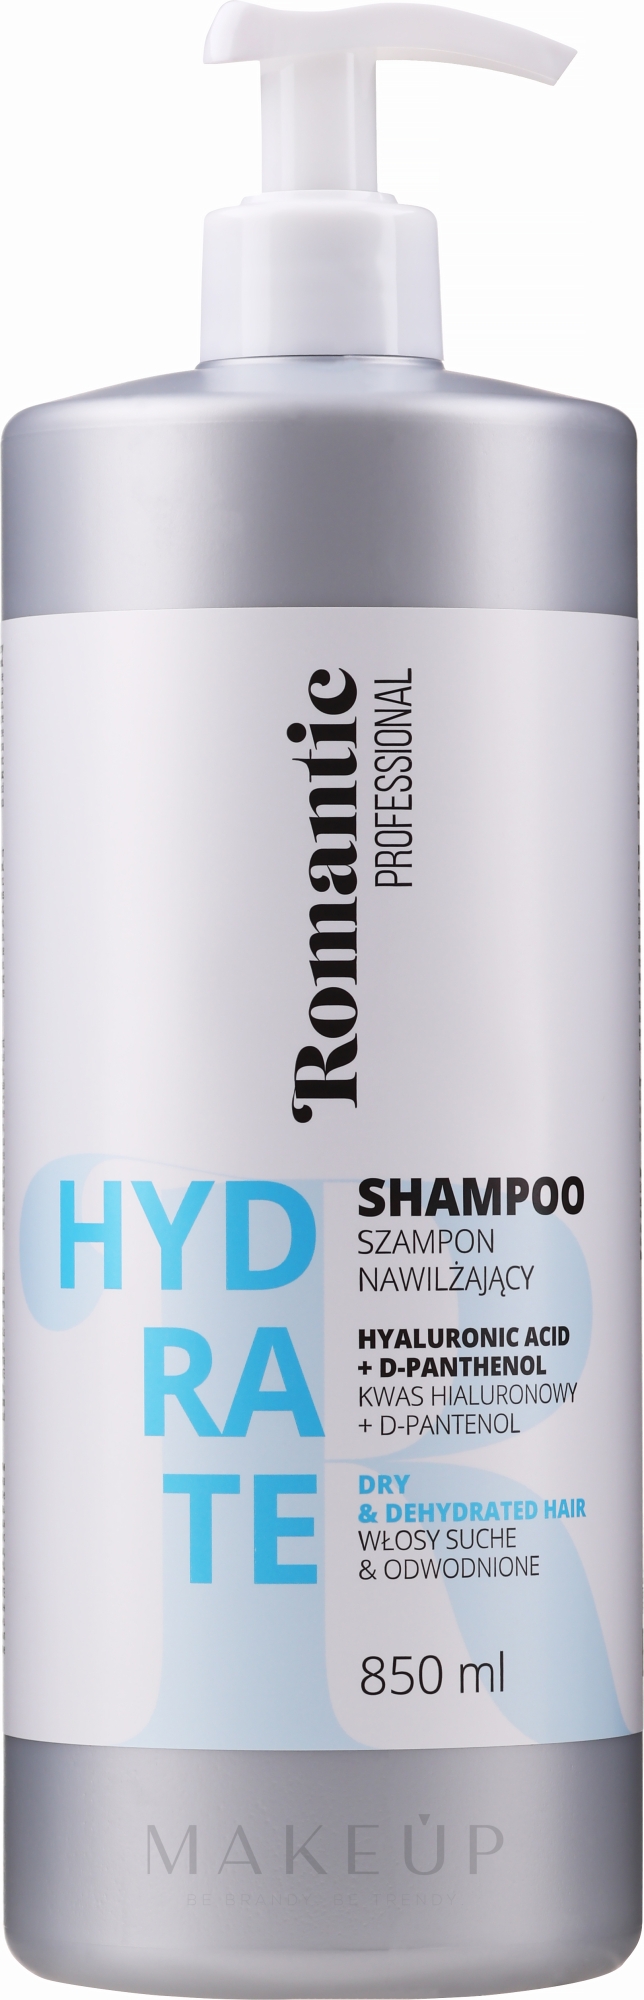 Revitalisierendes Shampoo für stark strukturgeschädigtes und brüchiges Haar - Romantic Professional Hydrate Shampoo — Foto 850 ml